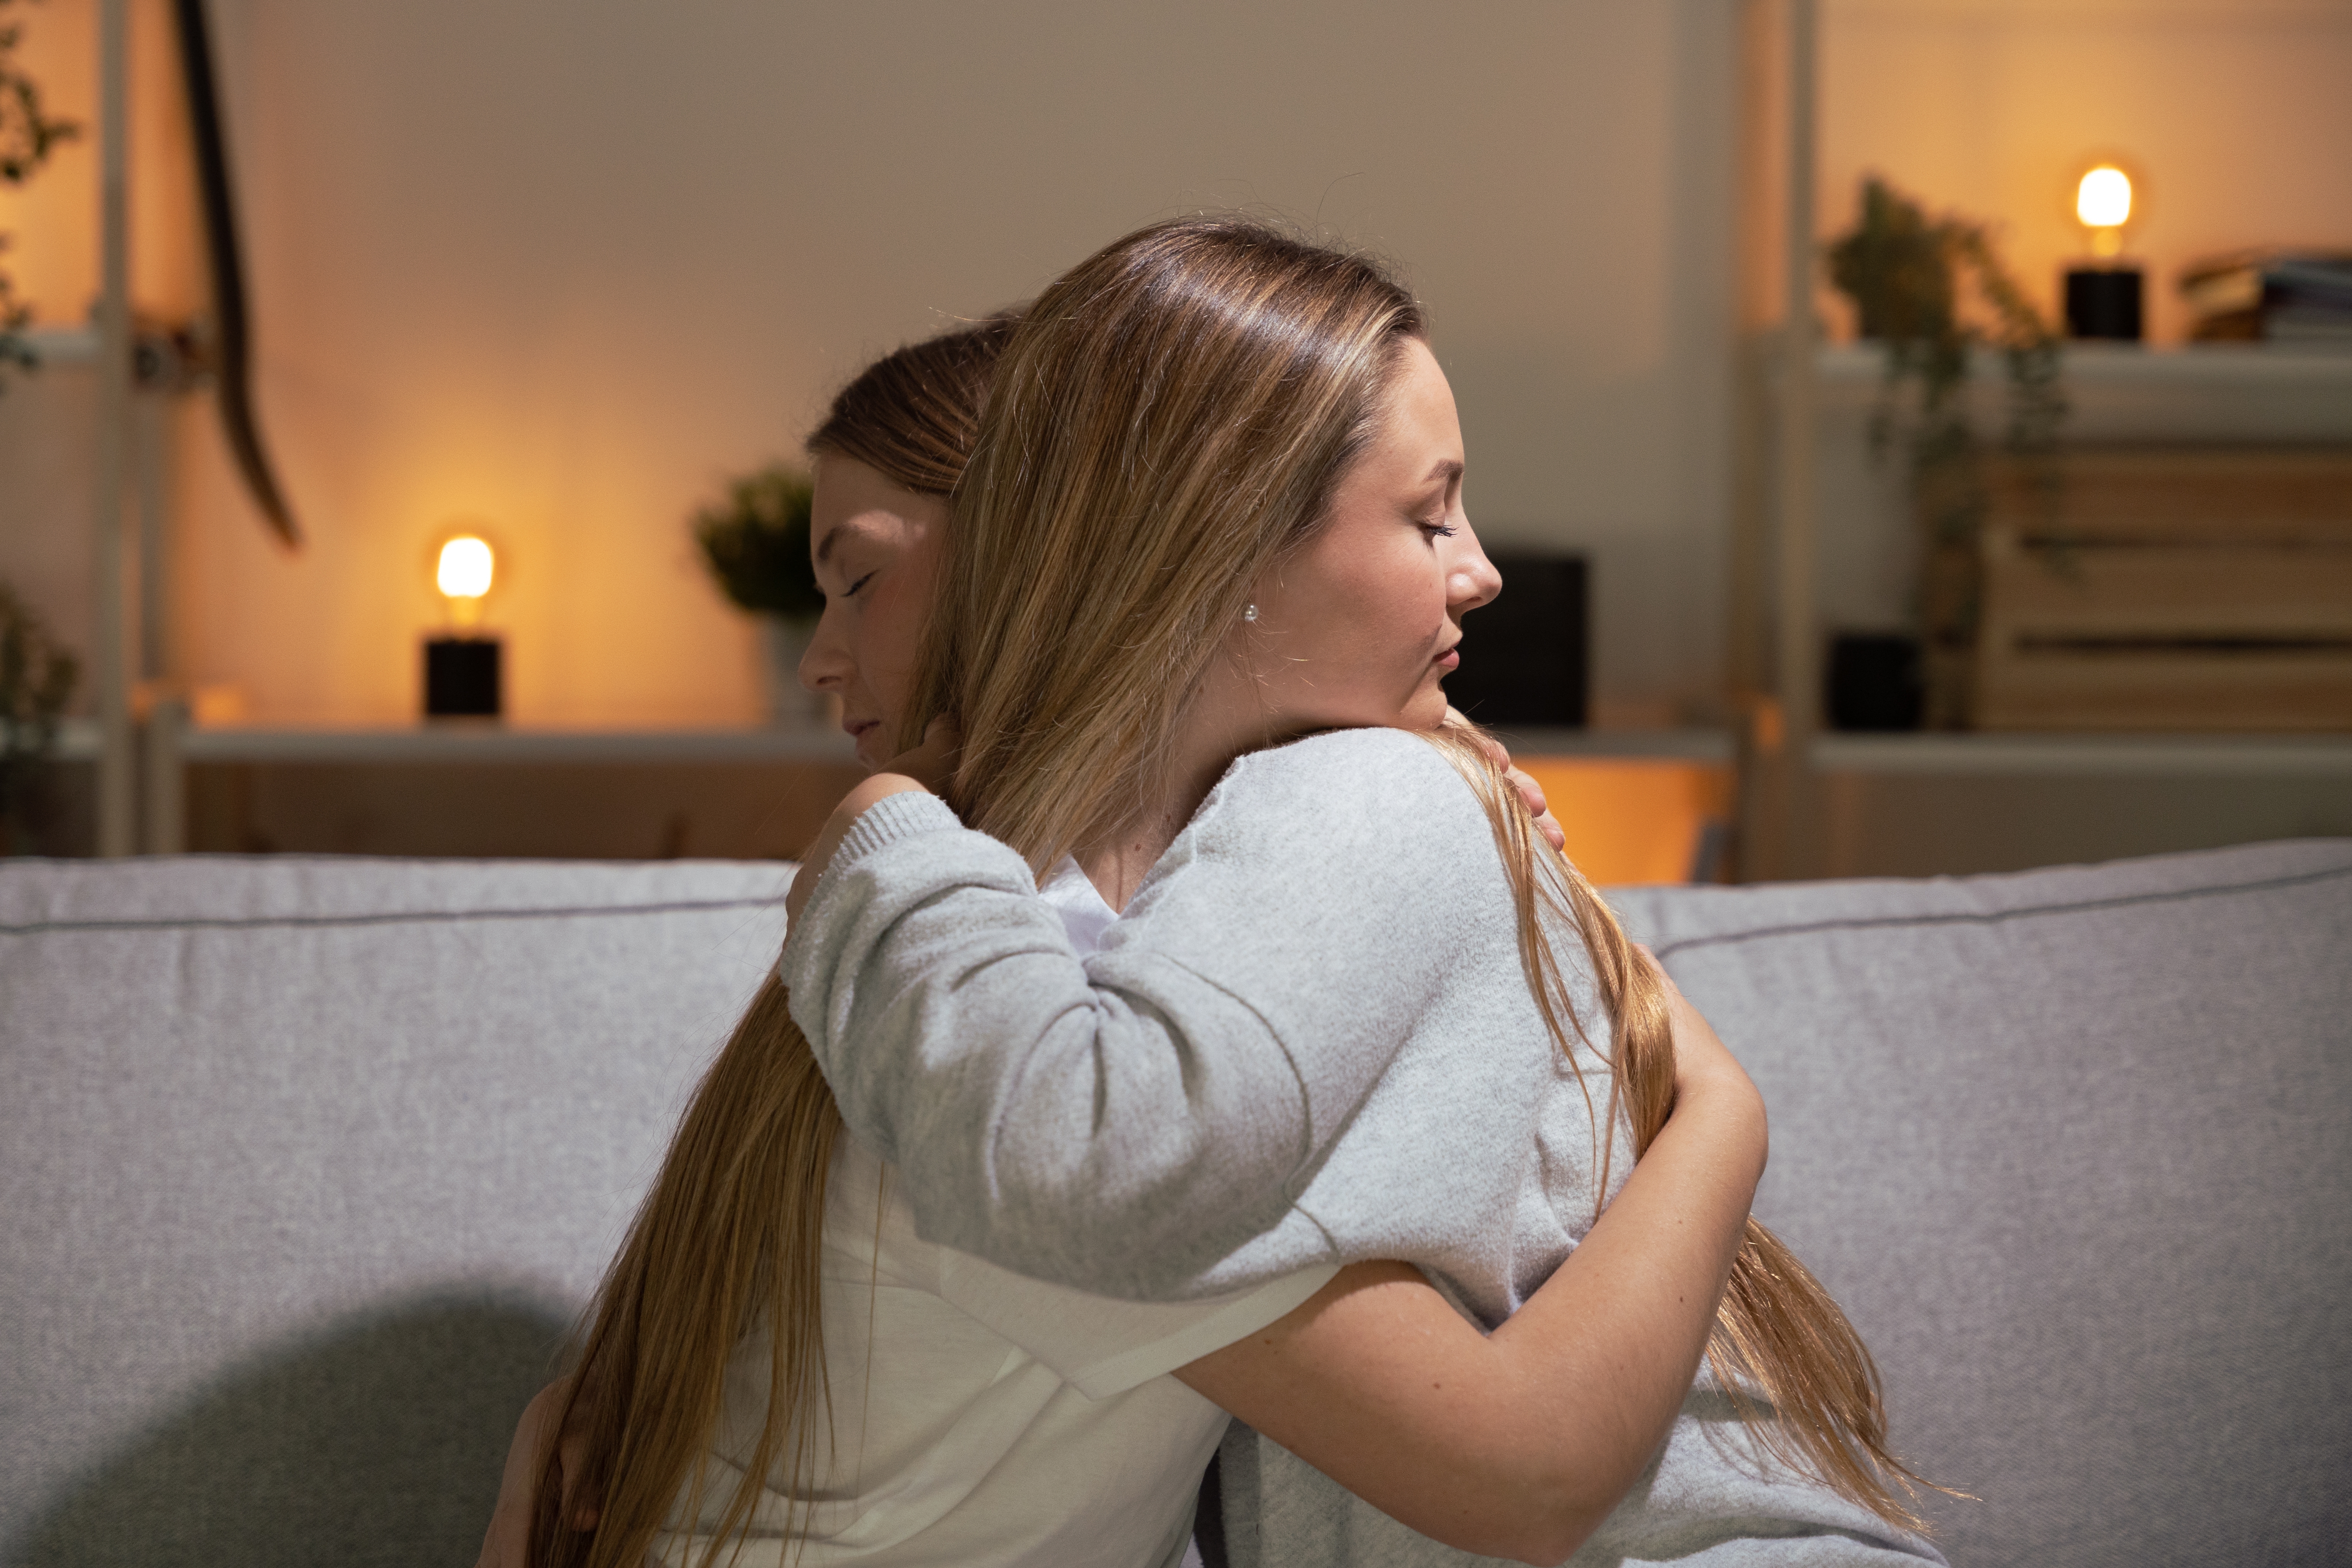 Una joven aparece consolando a otra mujer triste. | Foto: Shutterstock